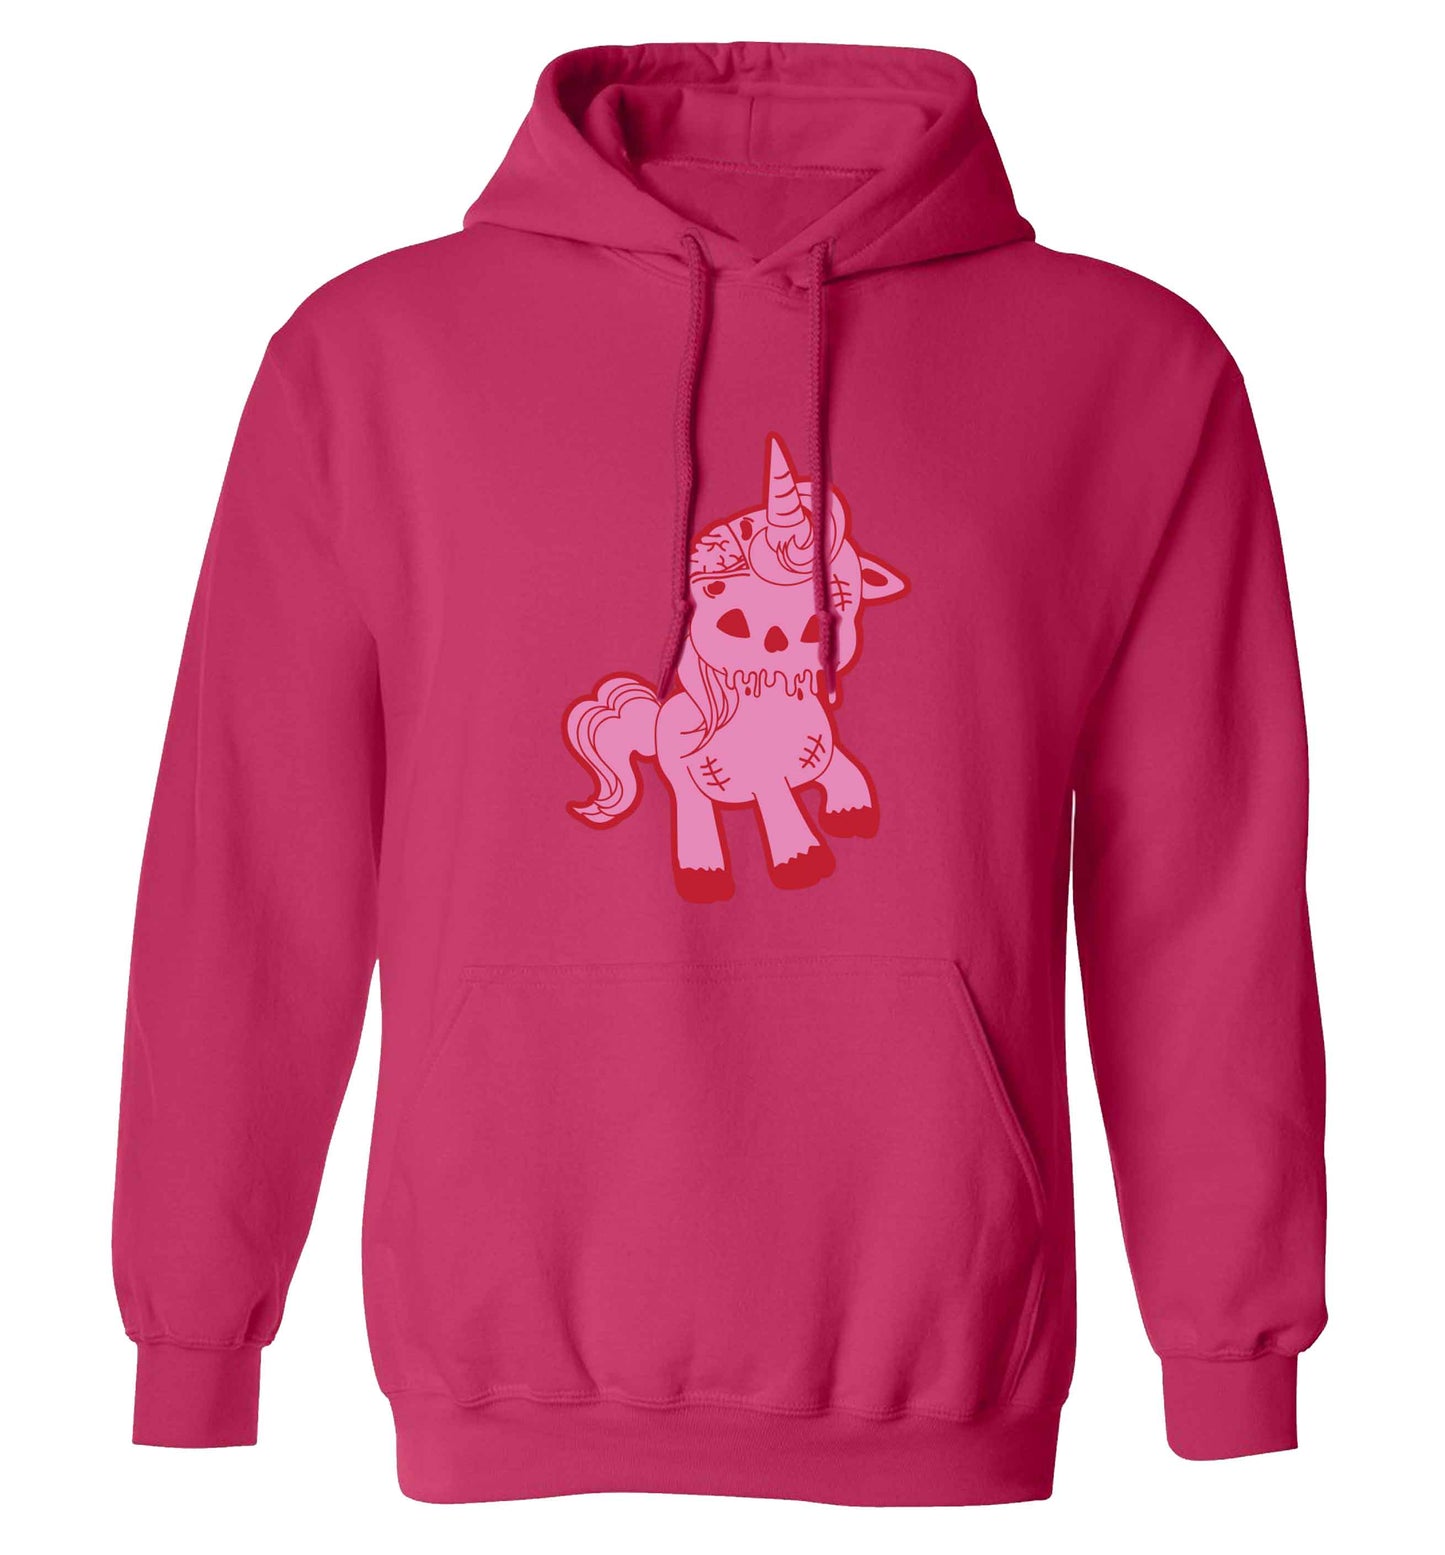 Zombie unicorn zombiecorn adults unisex pink hoodie 2XL